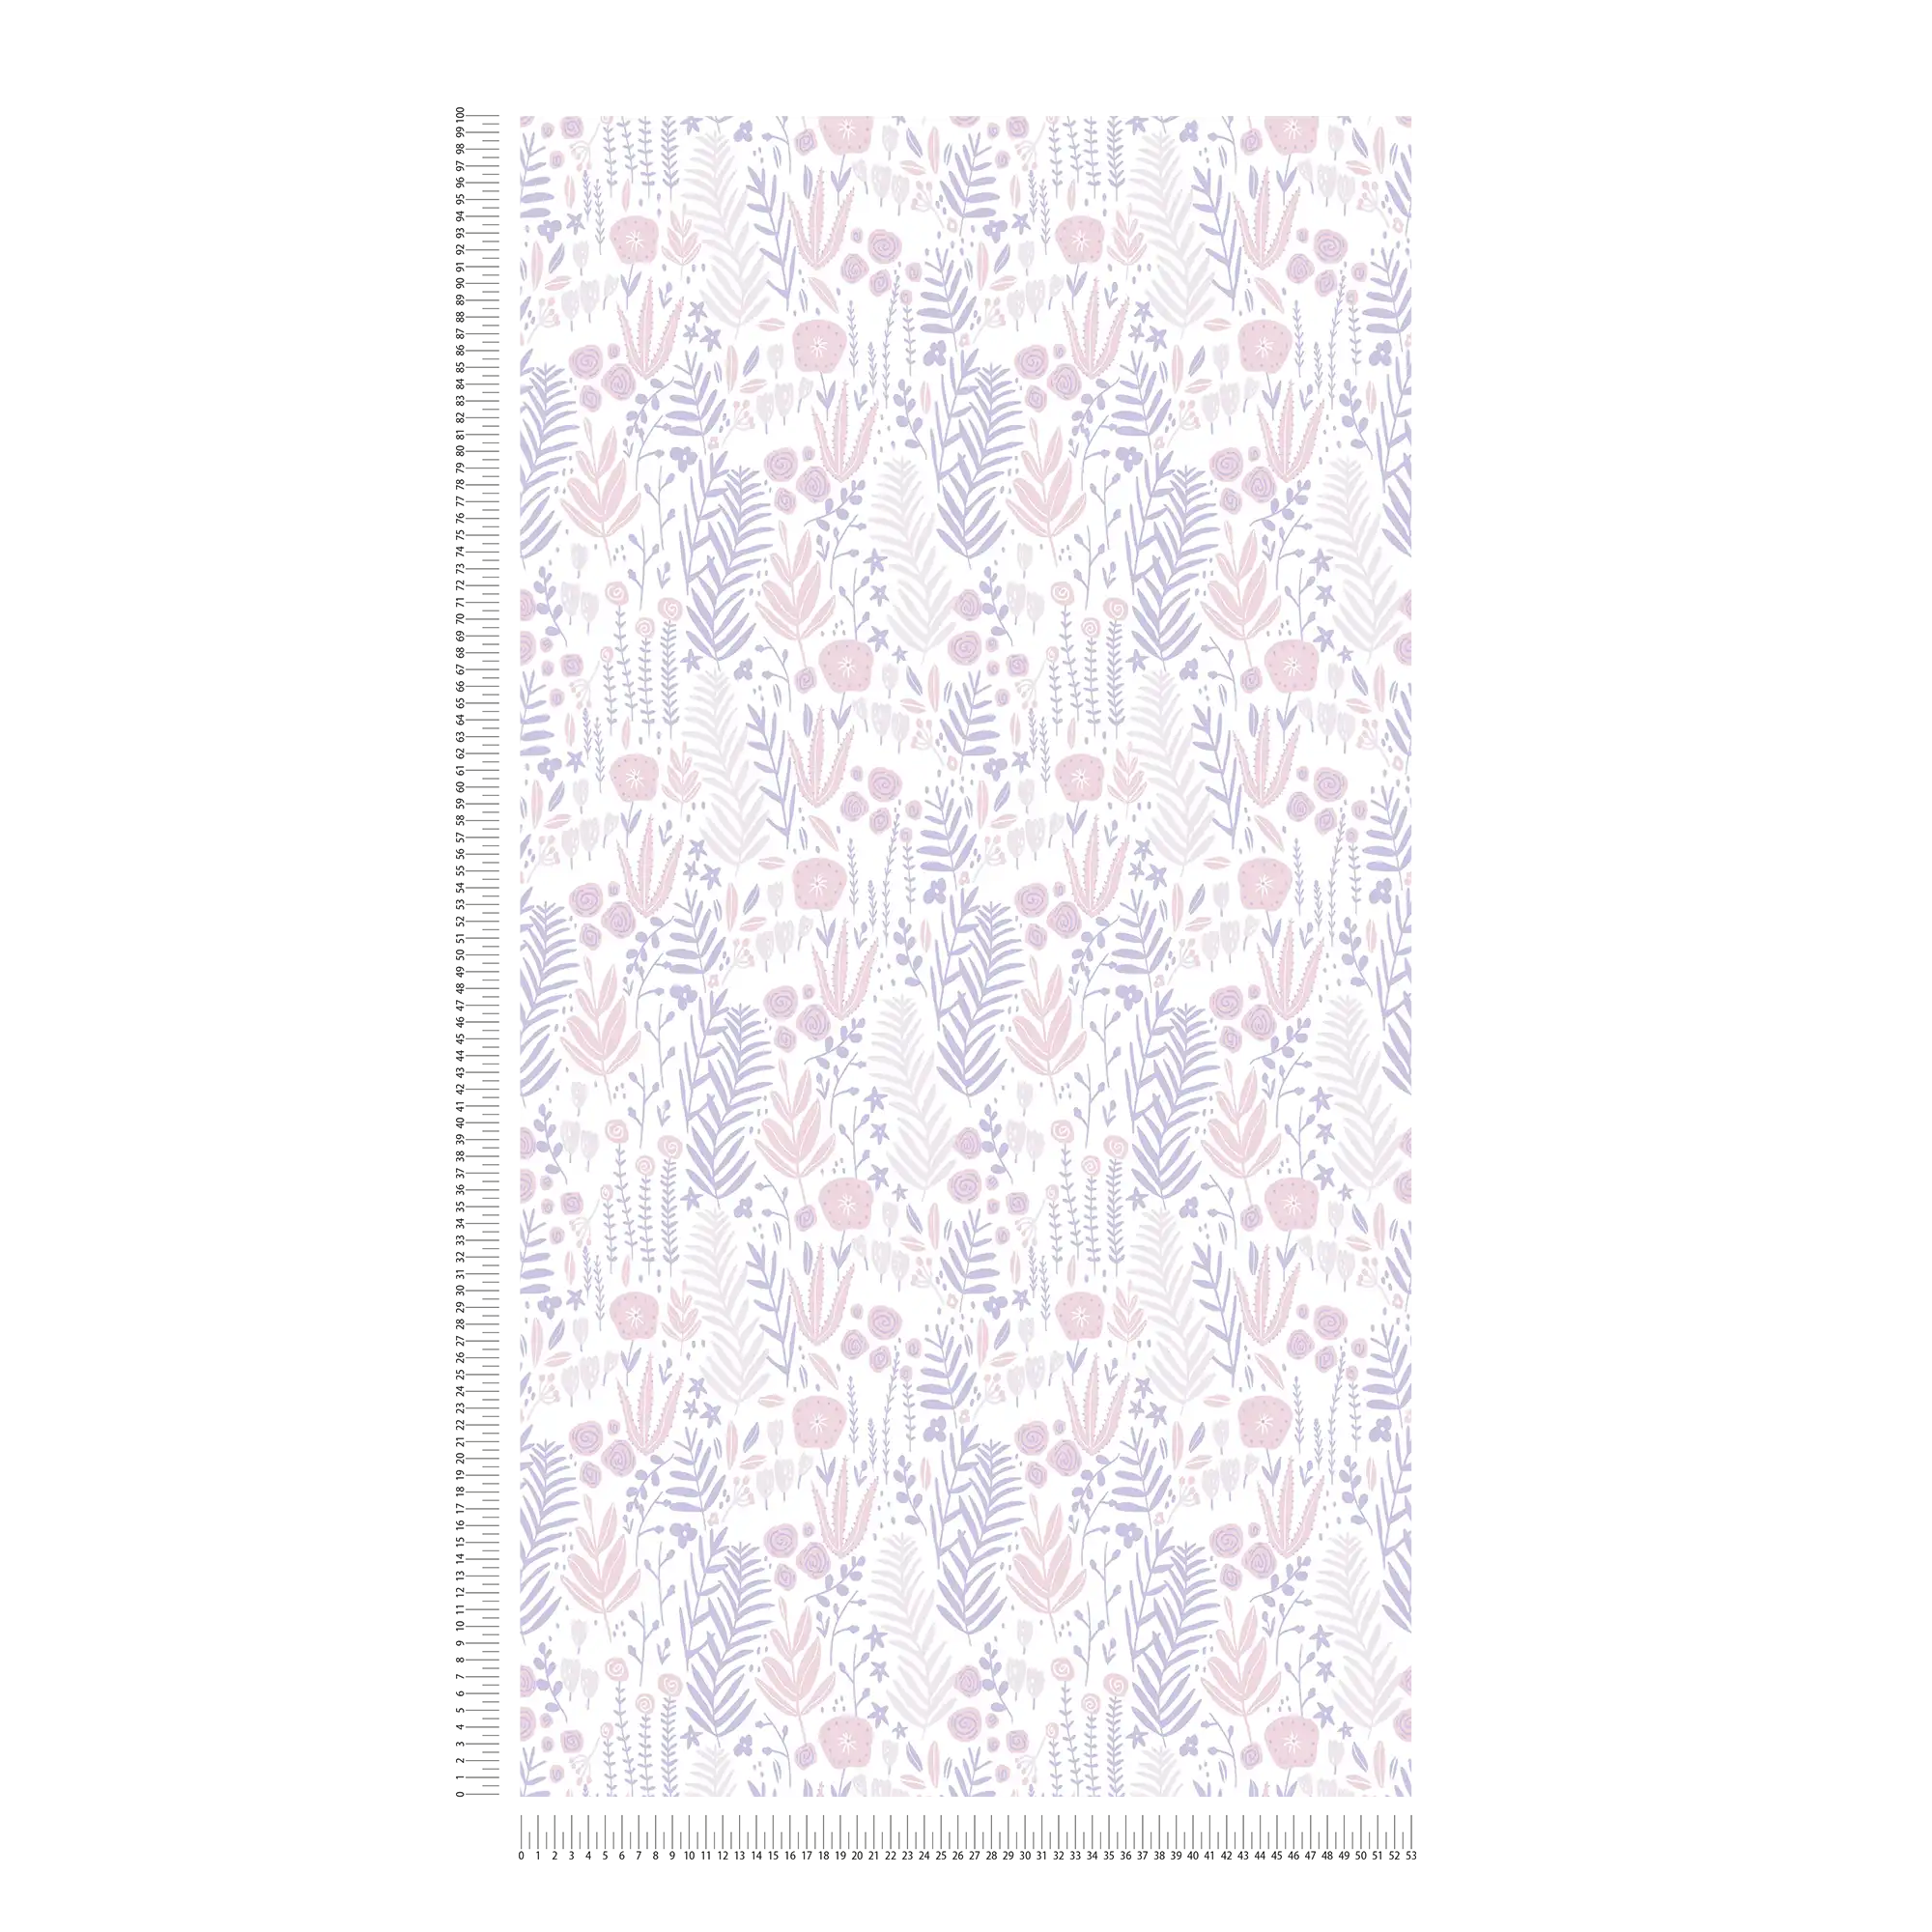             Mädchenzimmer Tapete Pflanzen – Lila, Rosa, Weiß
        